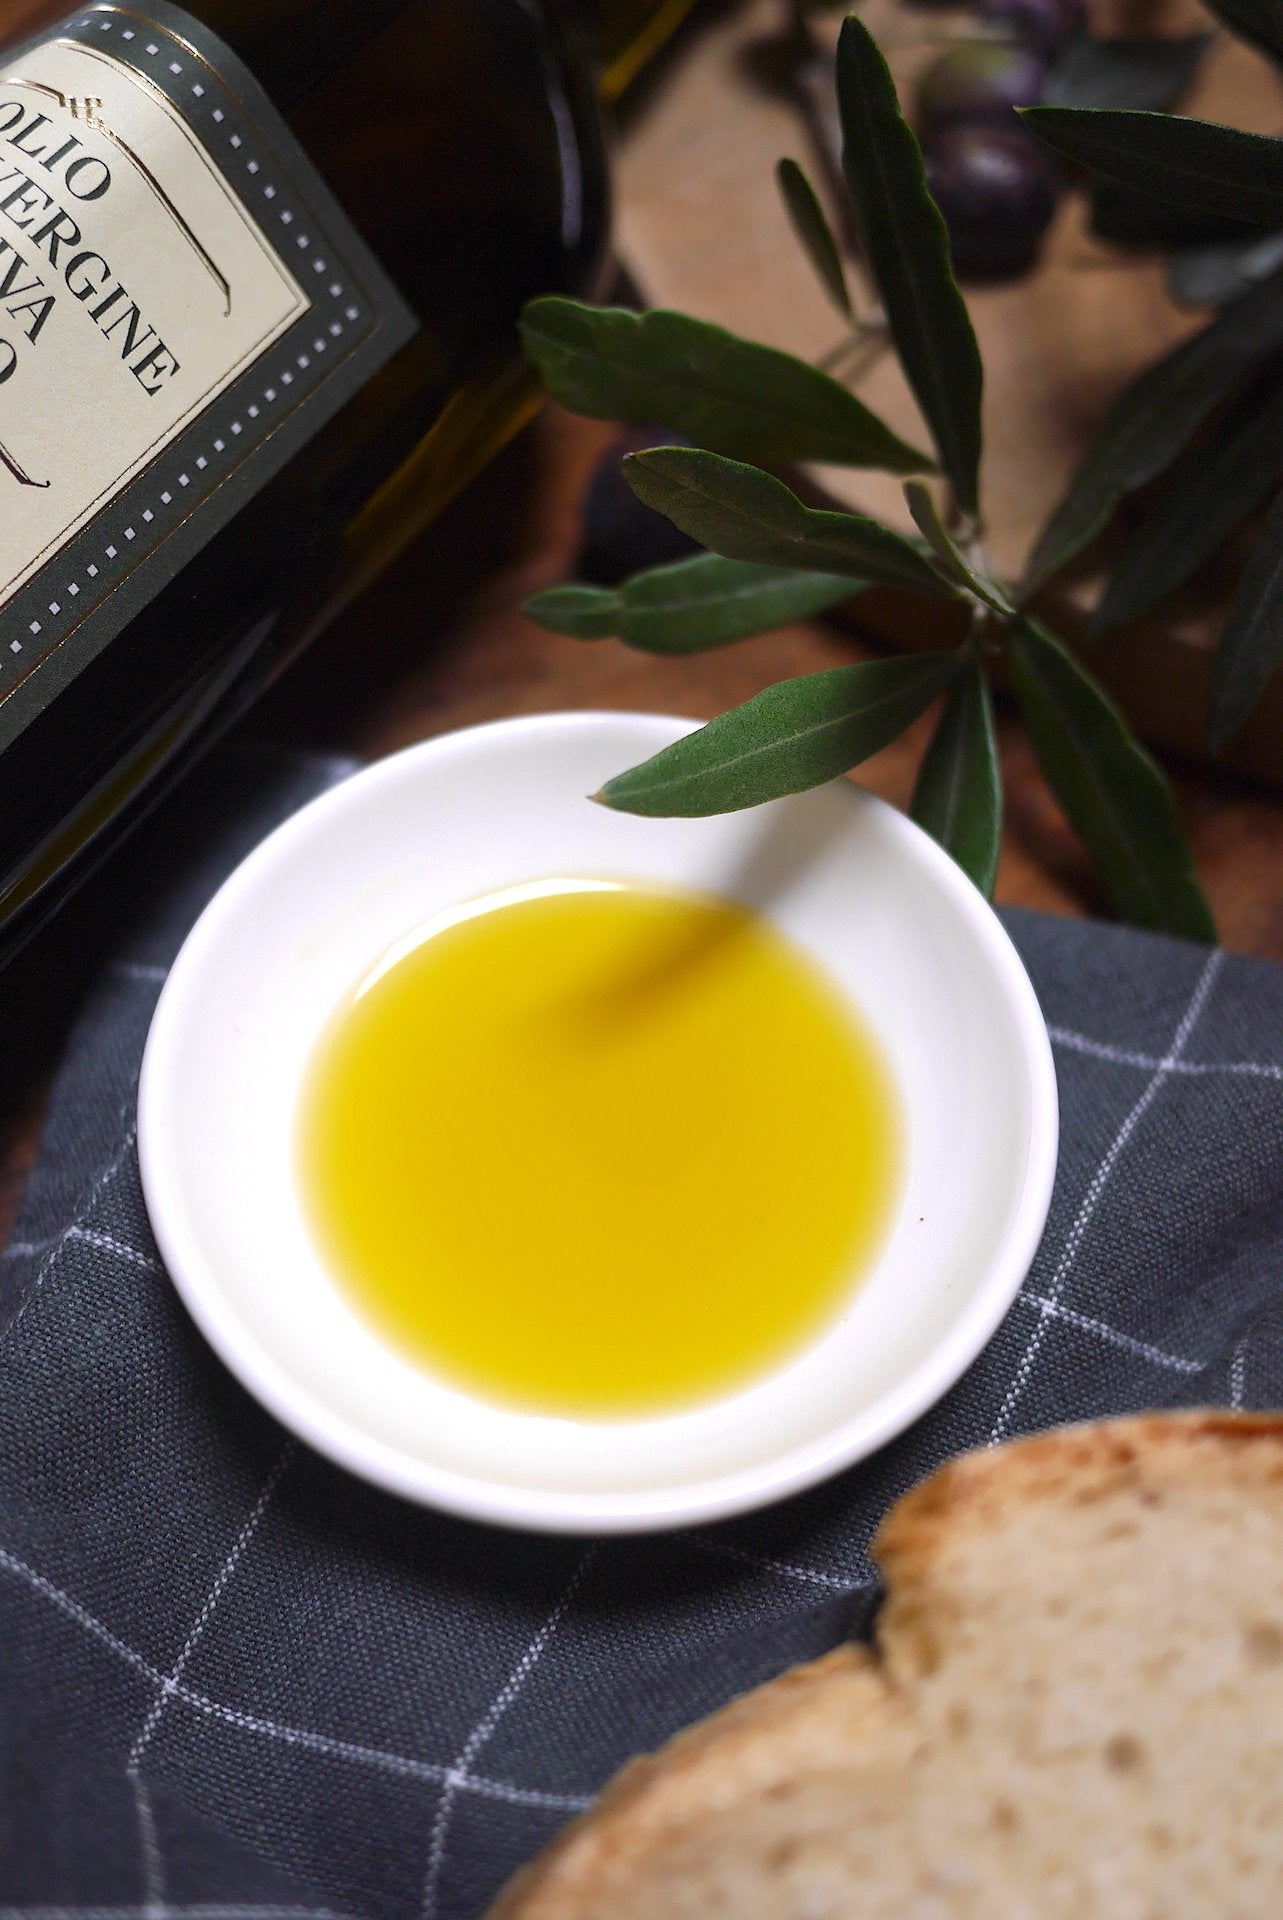 DUO Vinaigre balsamique & Huile d'olive NOUVELLE bio extra vierge